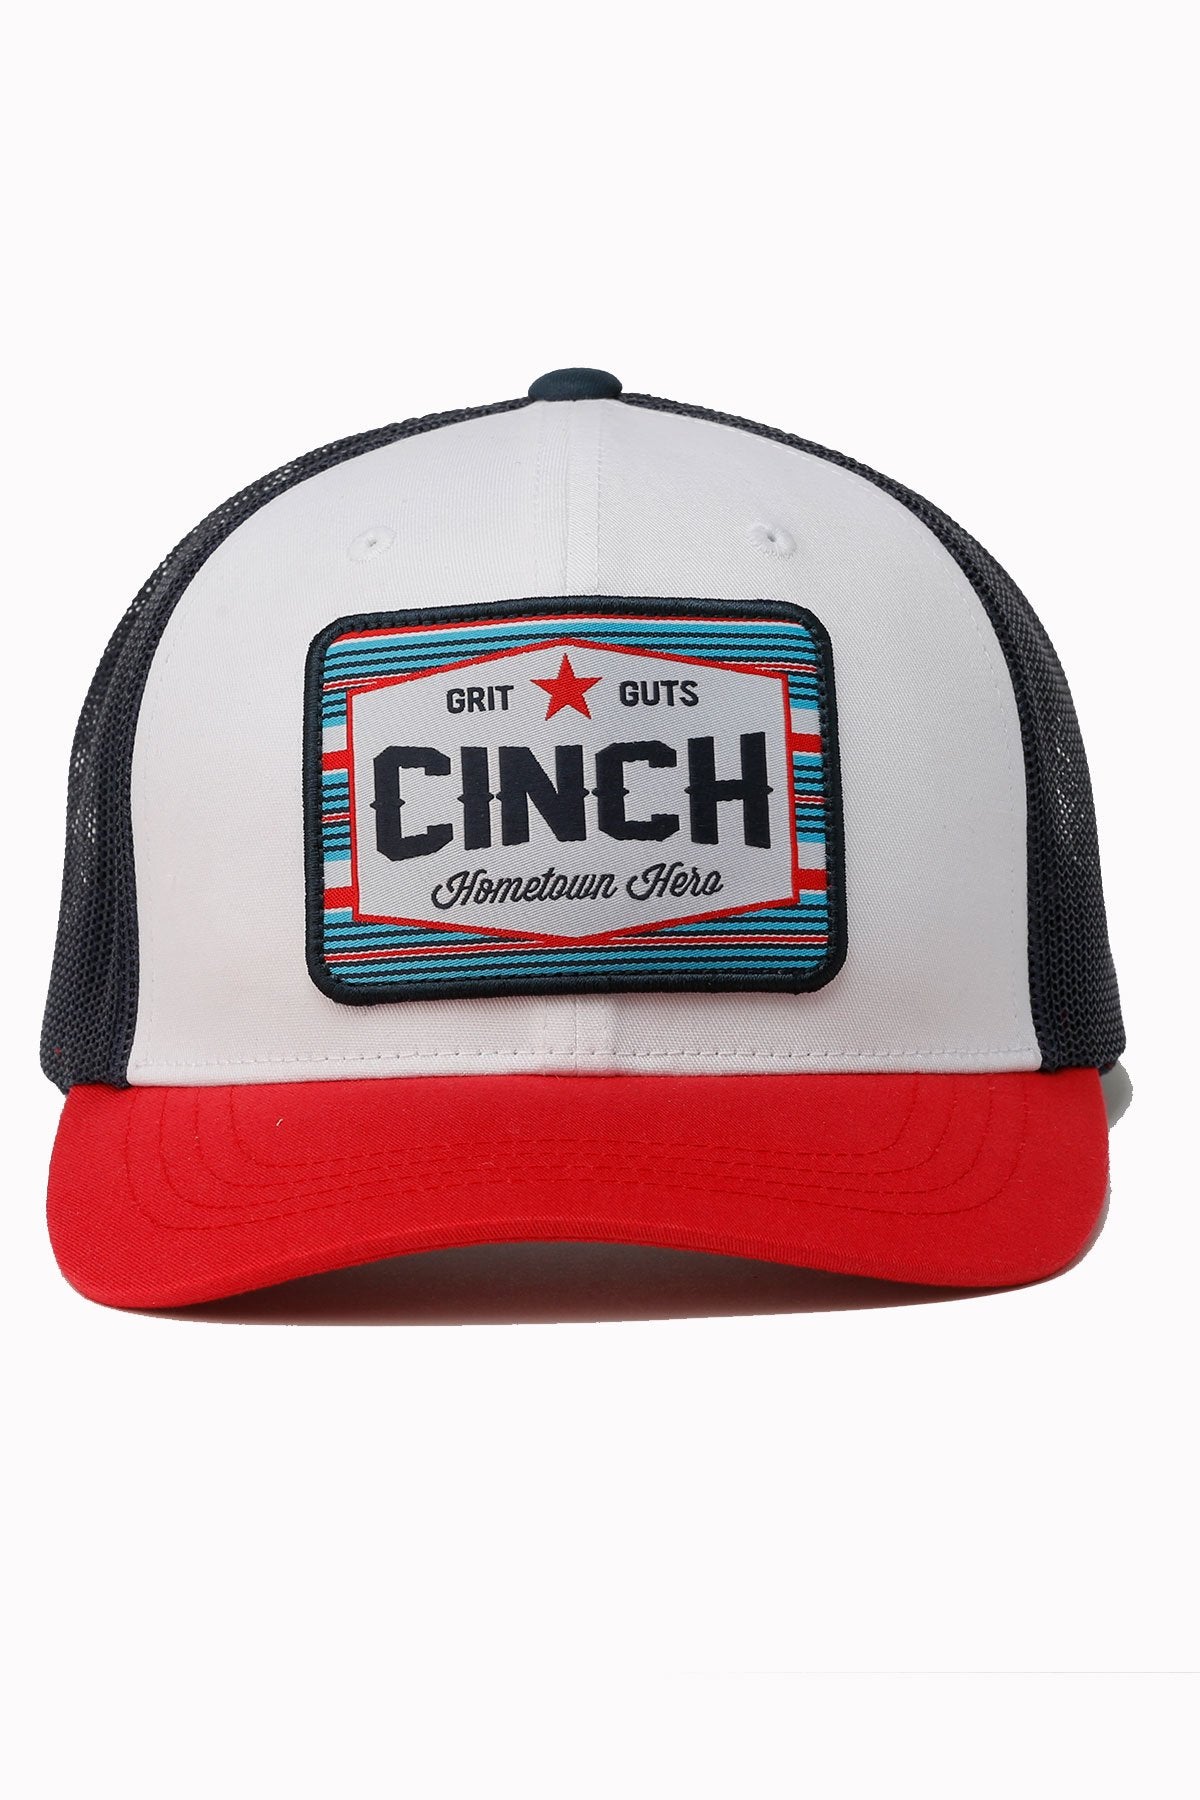 CINCH MEN’S HOMETOWN HERO CAP - WHITE / RED / NAVY